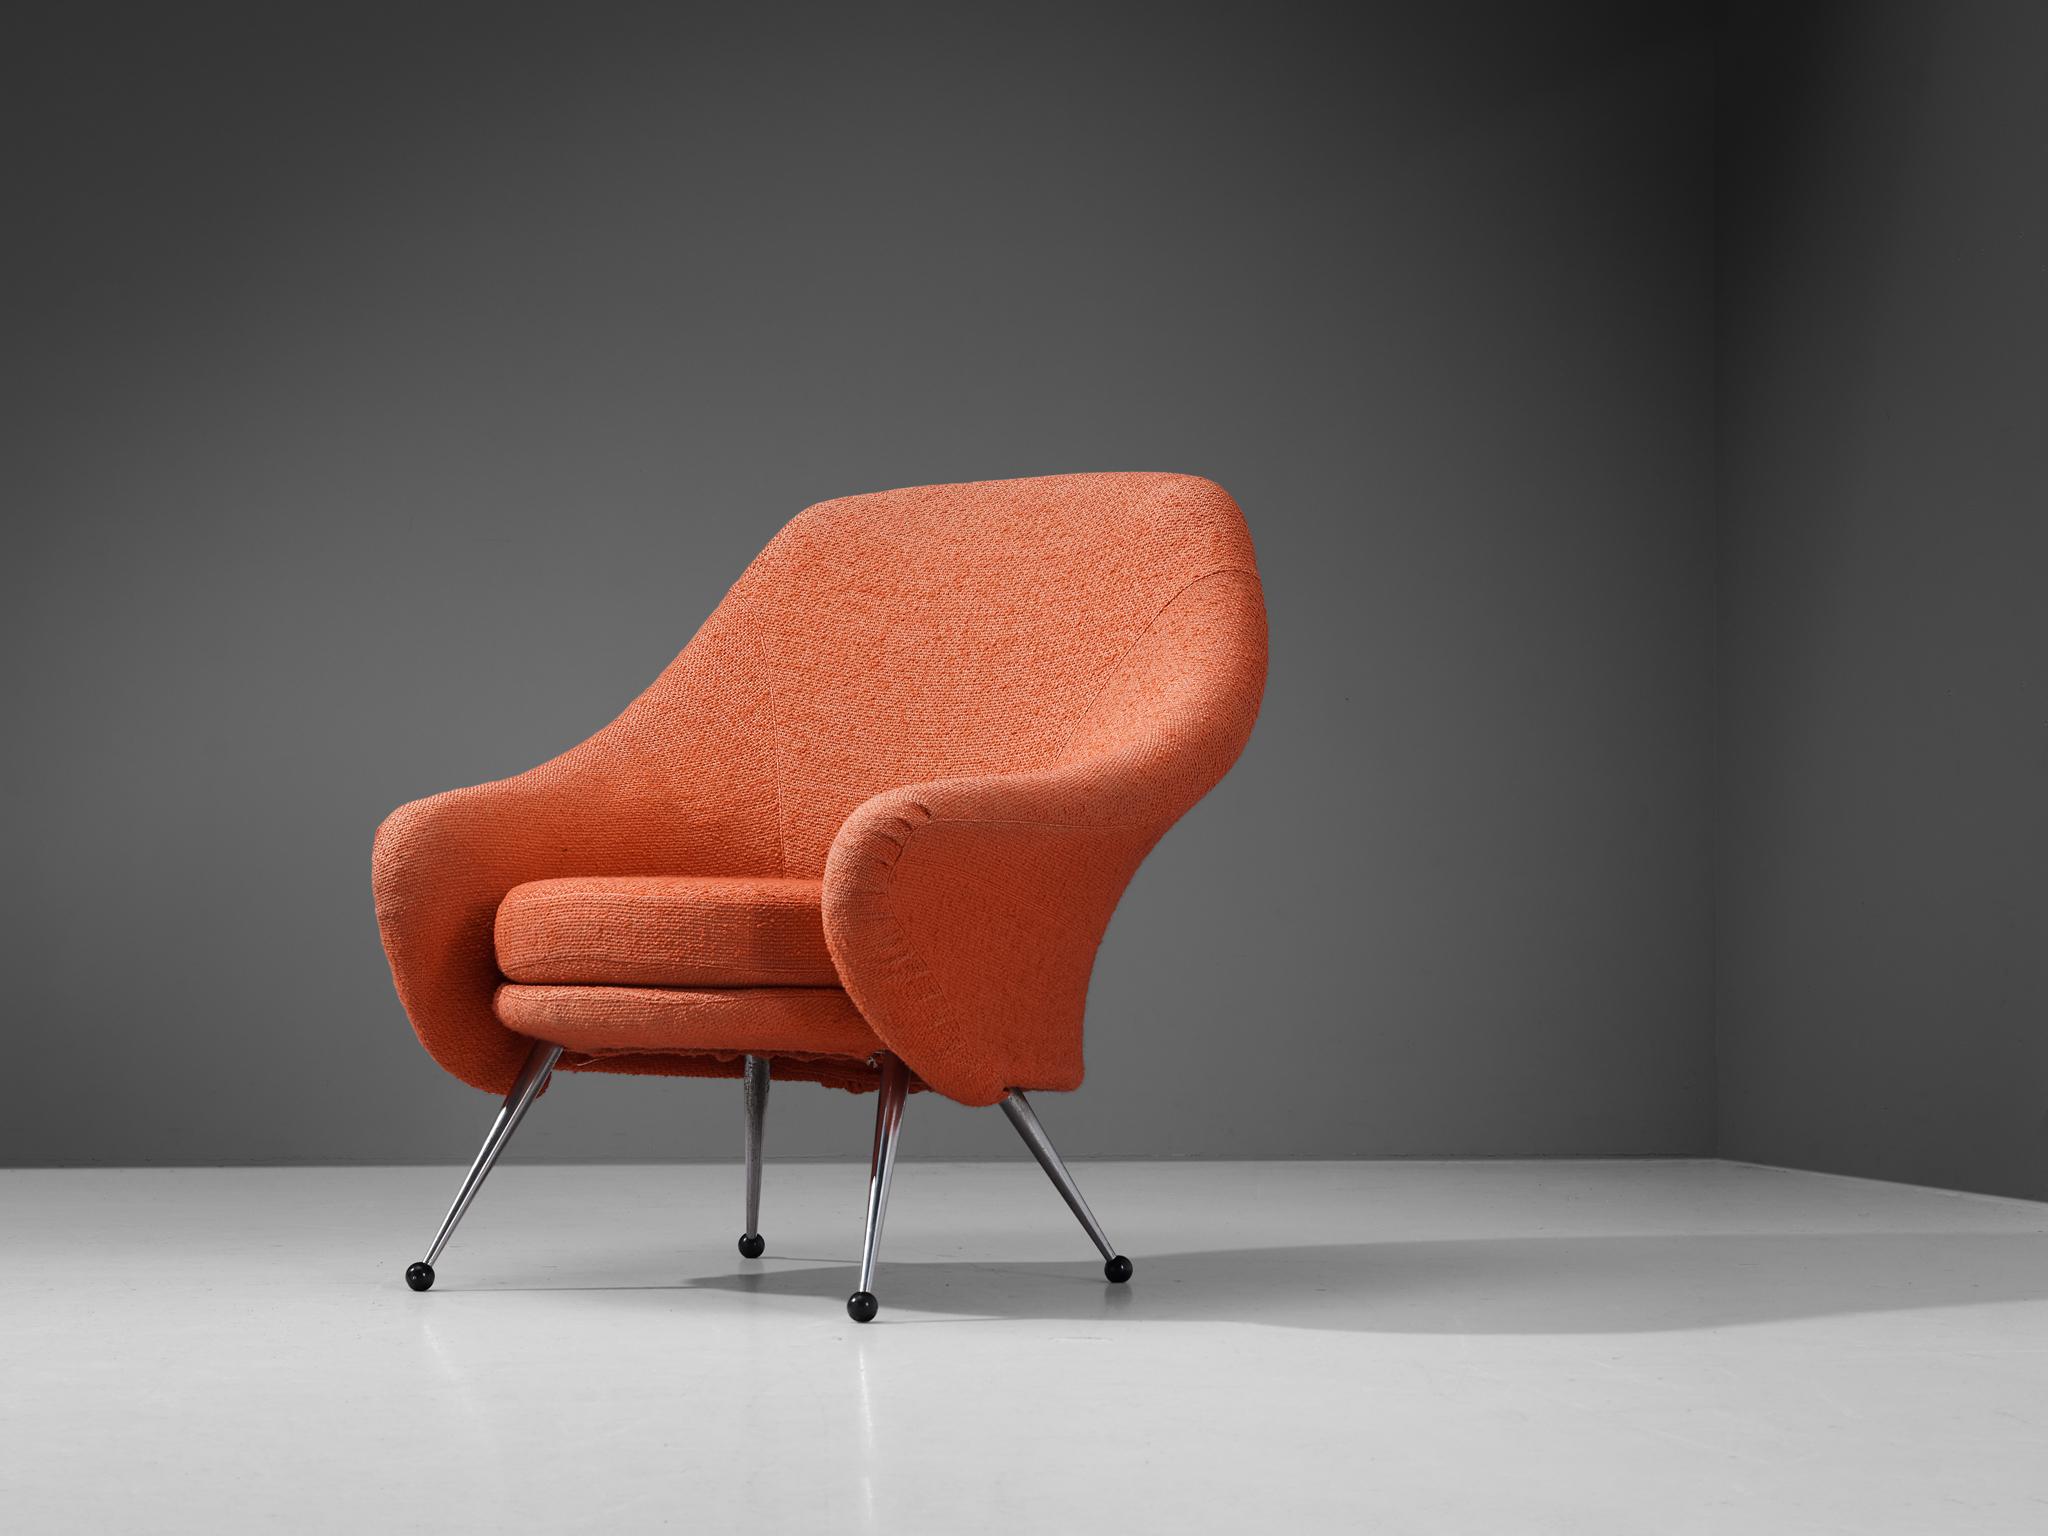 Marco Zanuso pour Arflex, fauteuil, modèle 'Martingala', tissu, chrome, métal laqué, Italie, années 1950. 

Fauteuil excentrique conçu par le designer italien Marco Zanuso dans les années cinquante. L'aspect ludique de cette chaise dite 